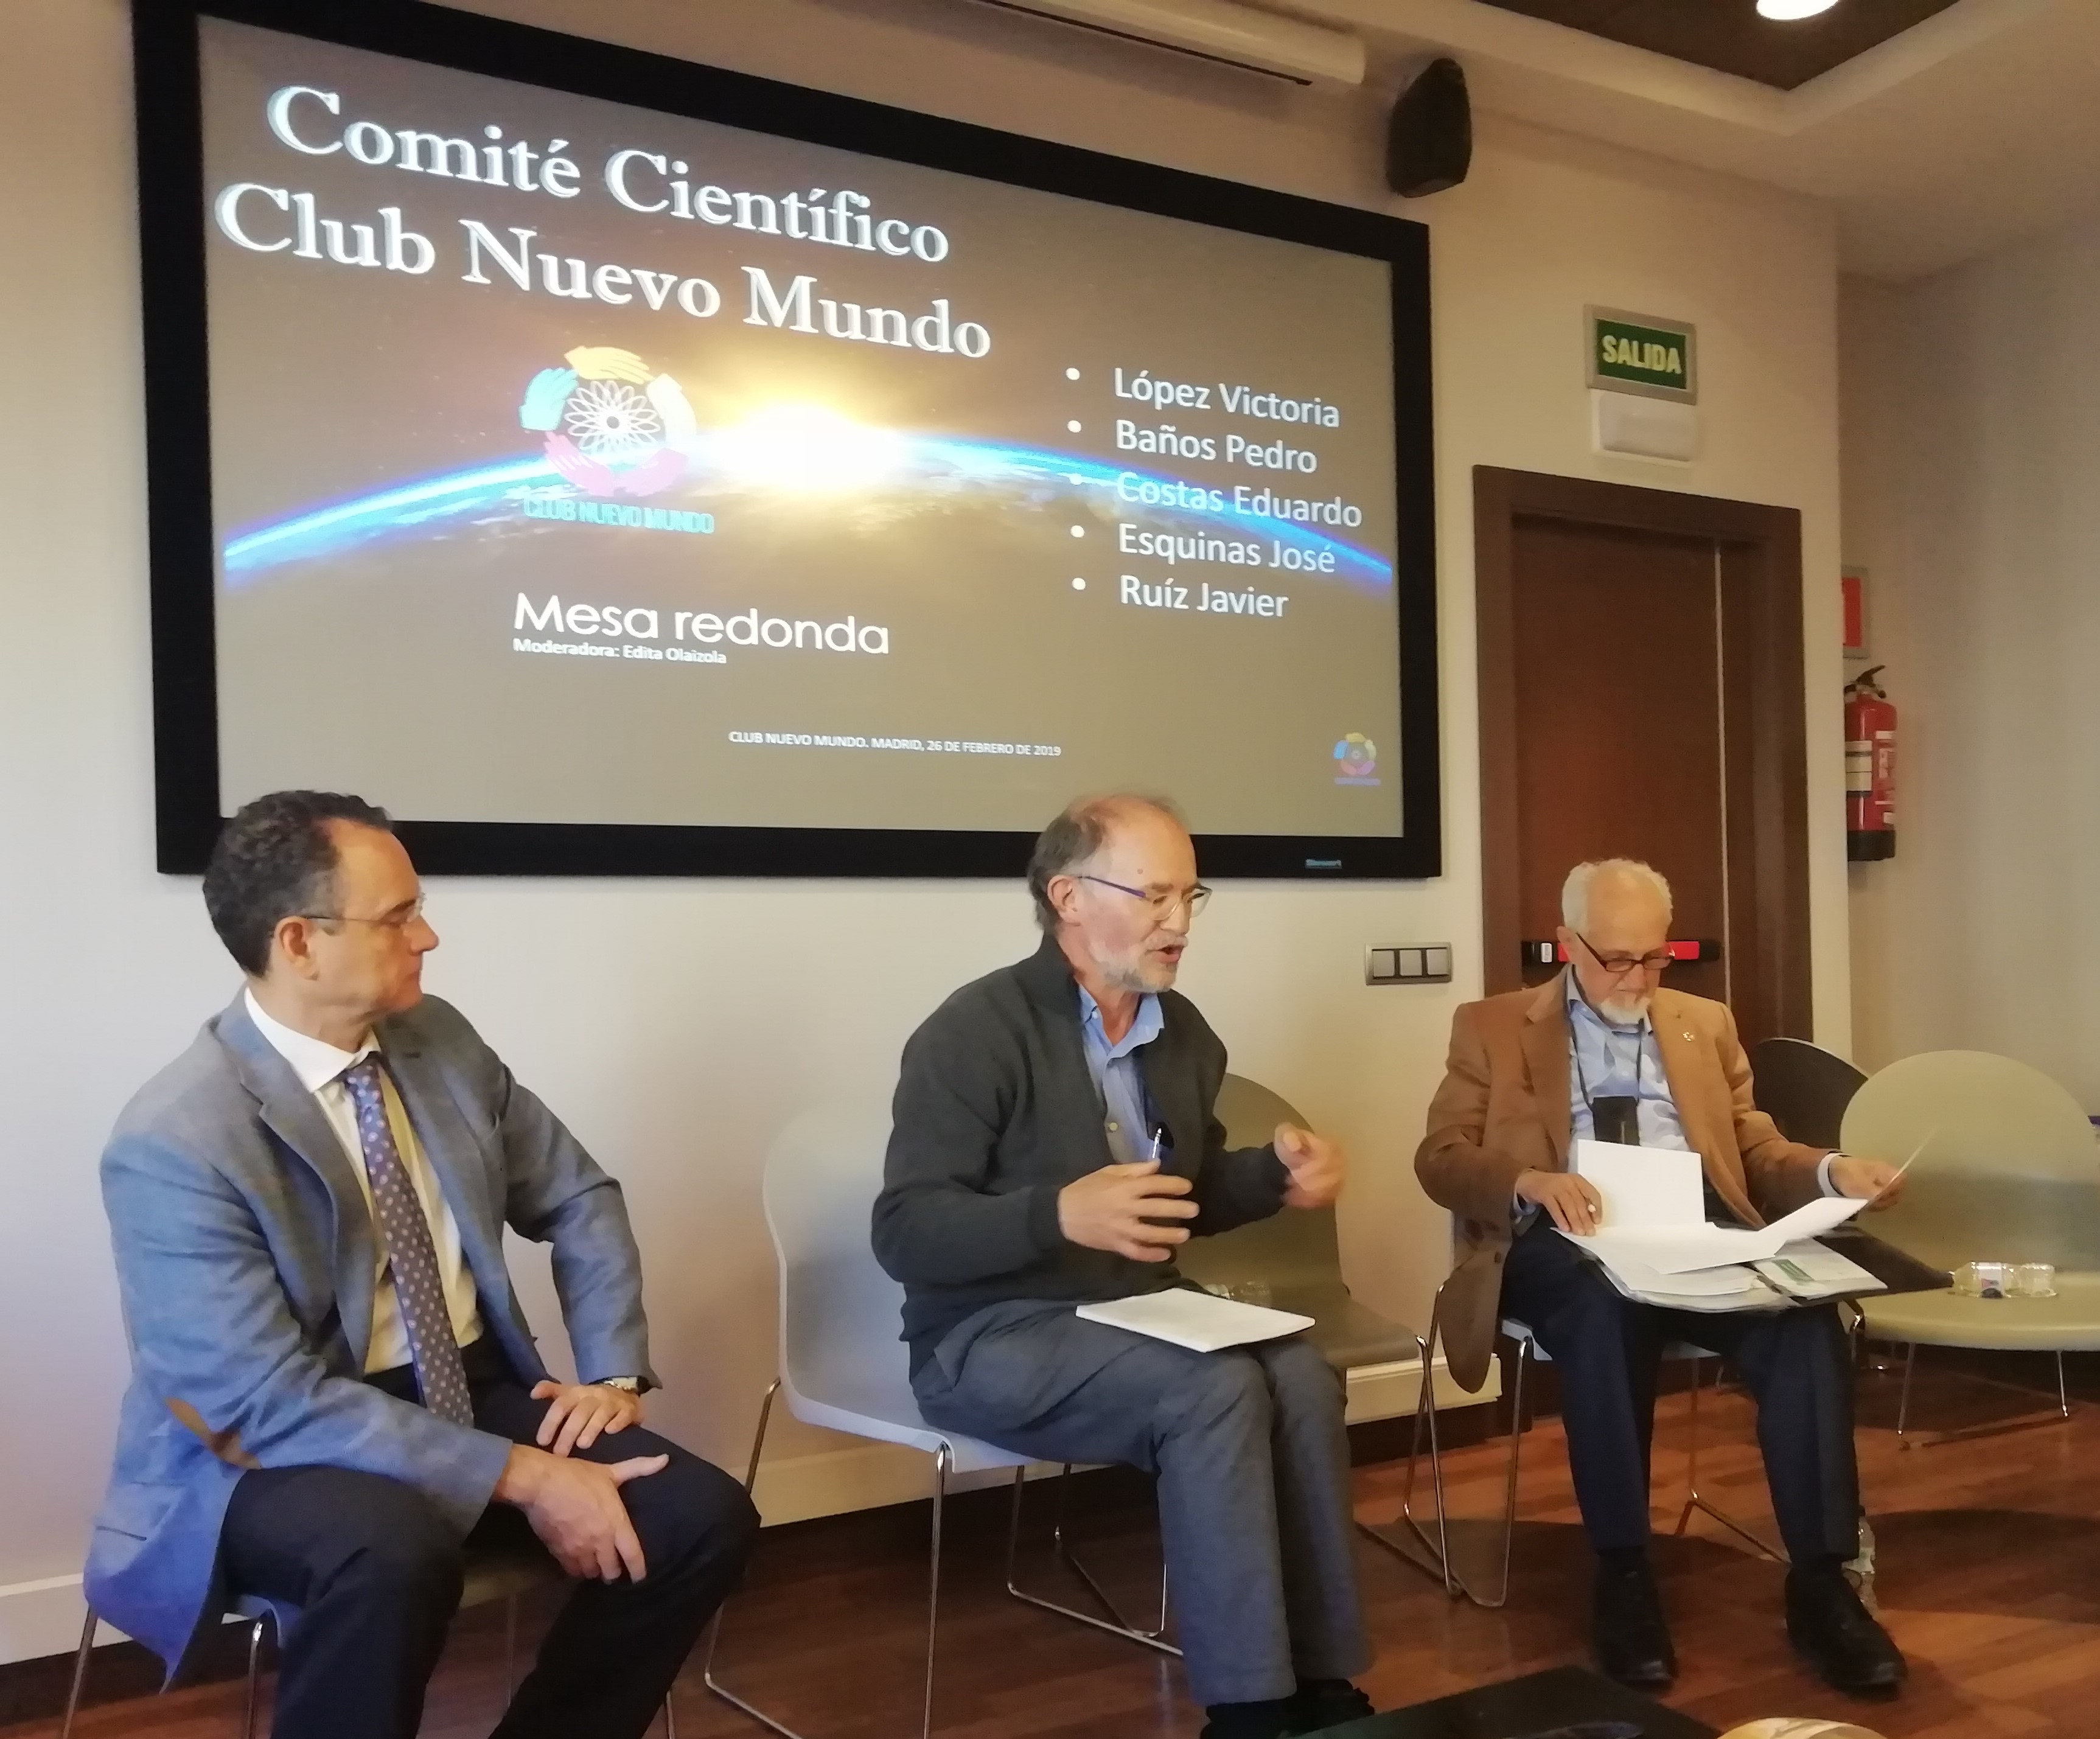 Un momento de la mesa redonda. De izquierda a derecha: Pedro Baños, Eduardo Costas y José Esquinas. Foto: Eva Reneses.